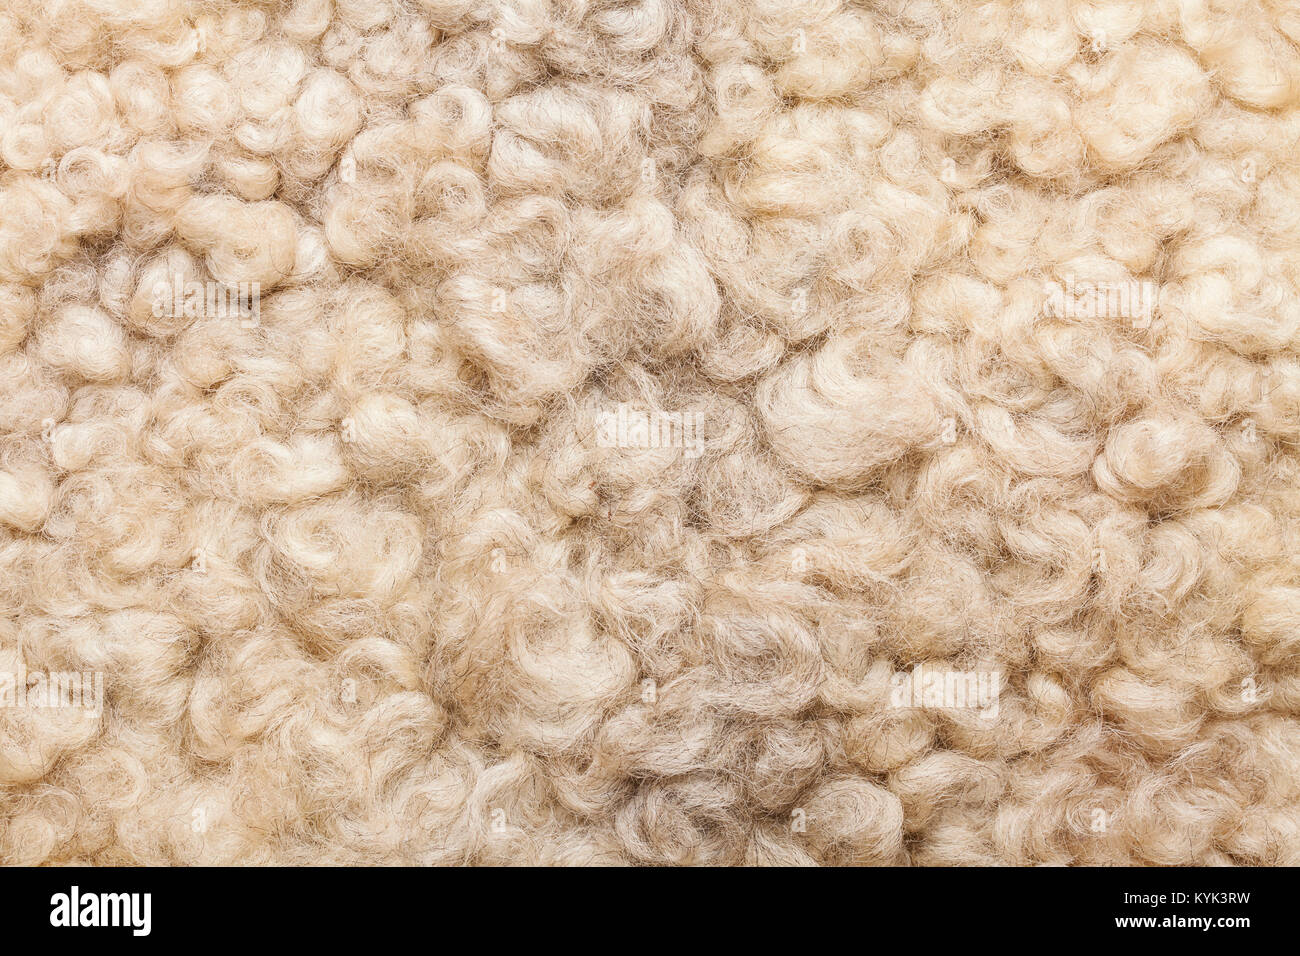 Schafe fell. Wolle Textur. Closeup Hintergrund Stockfoto